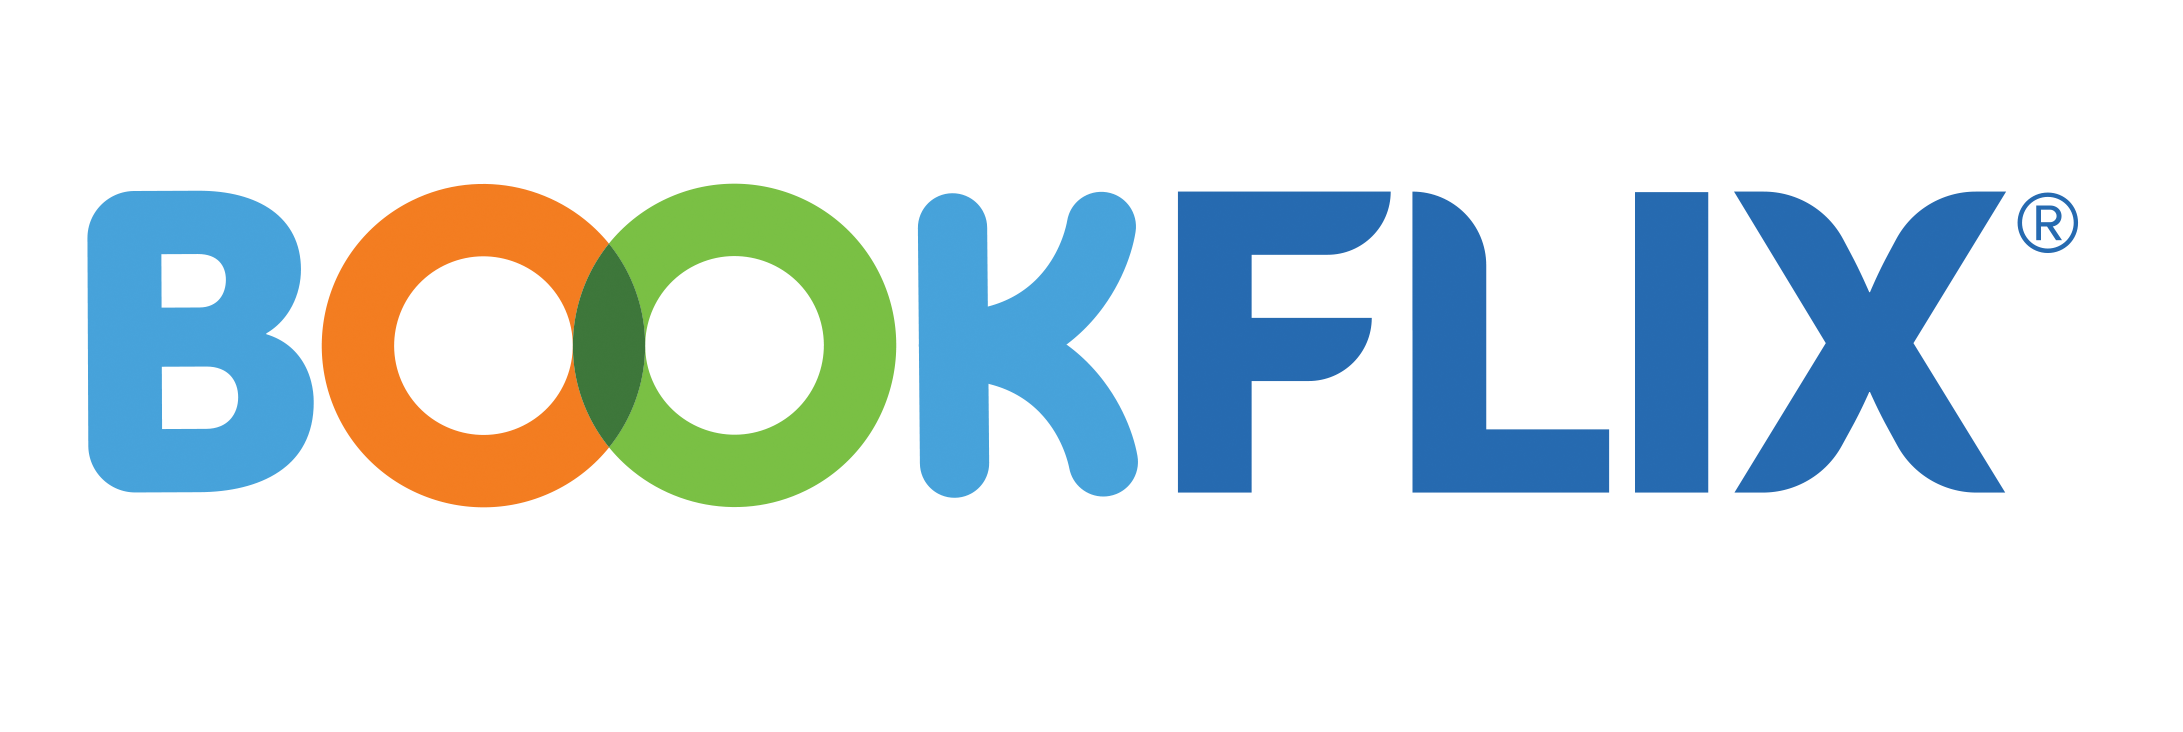 bkflx- 로고